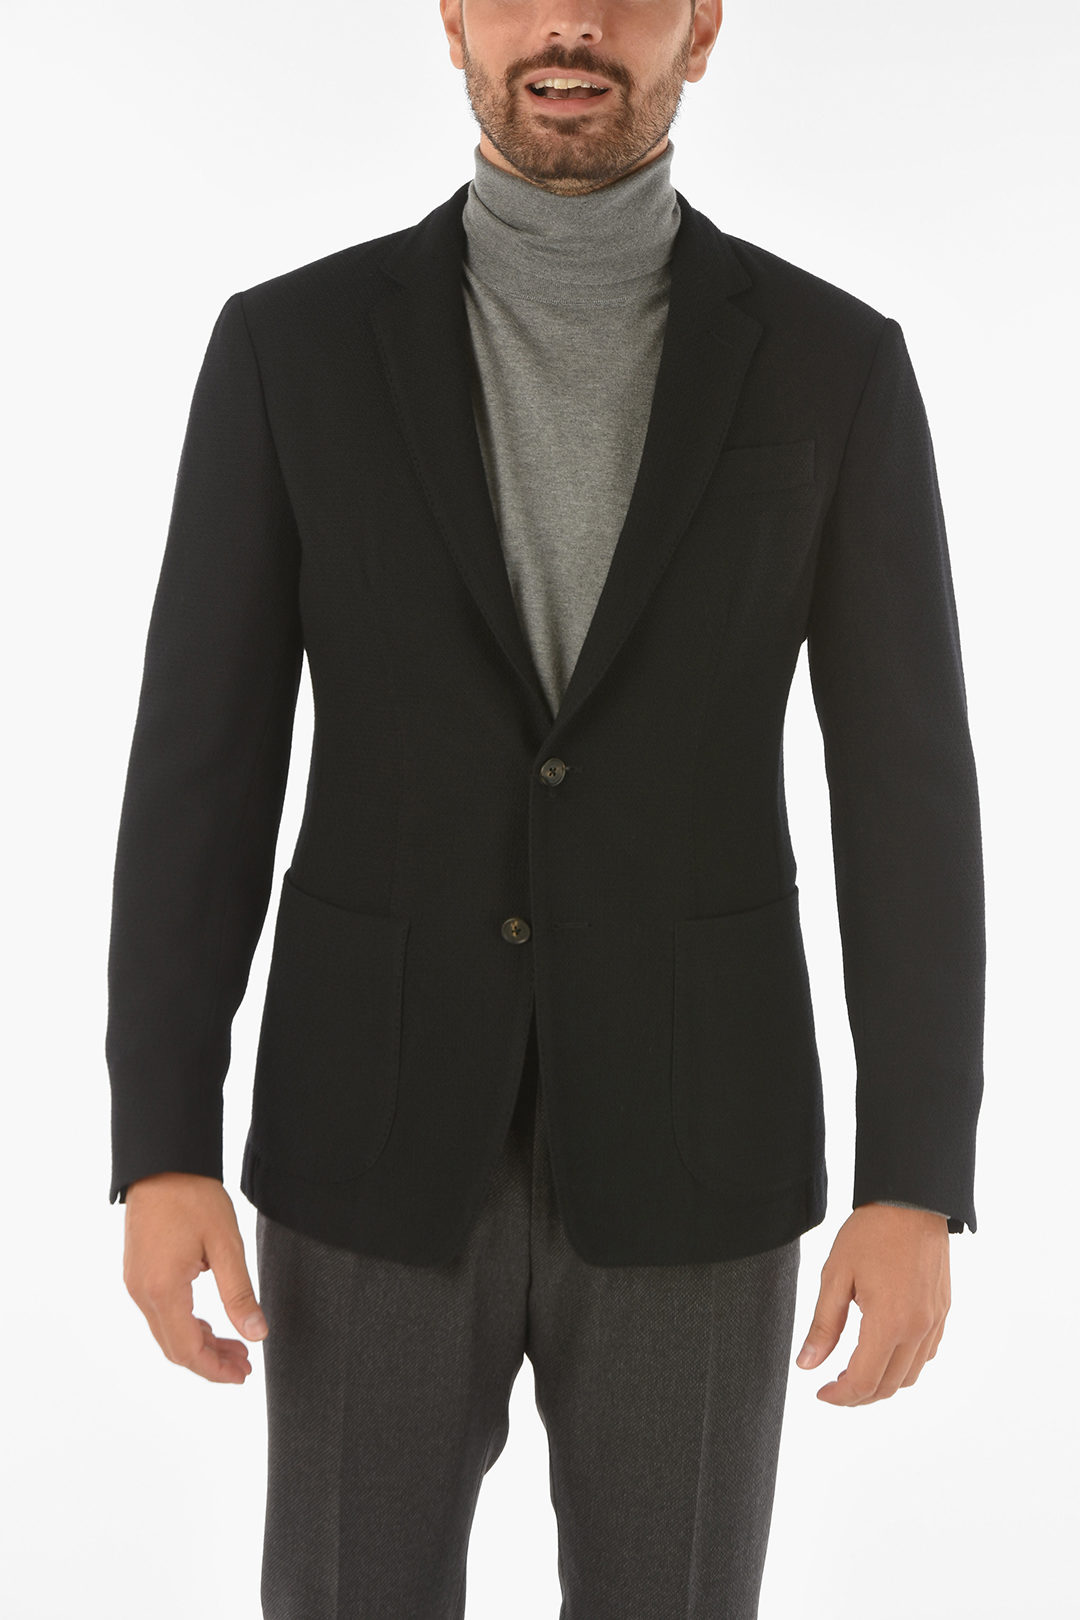 Corneliani ID virgin wool side vents blazer men - Glamood Outlet